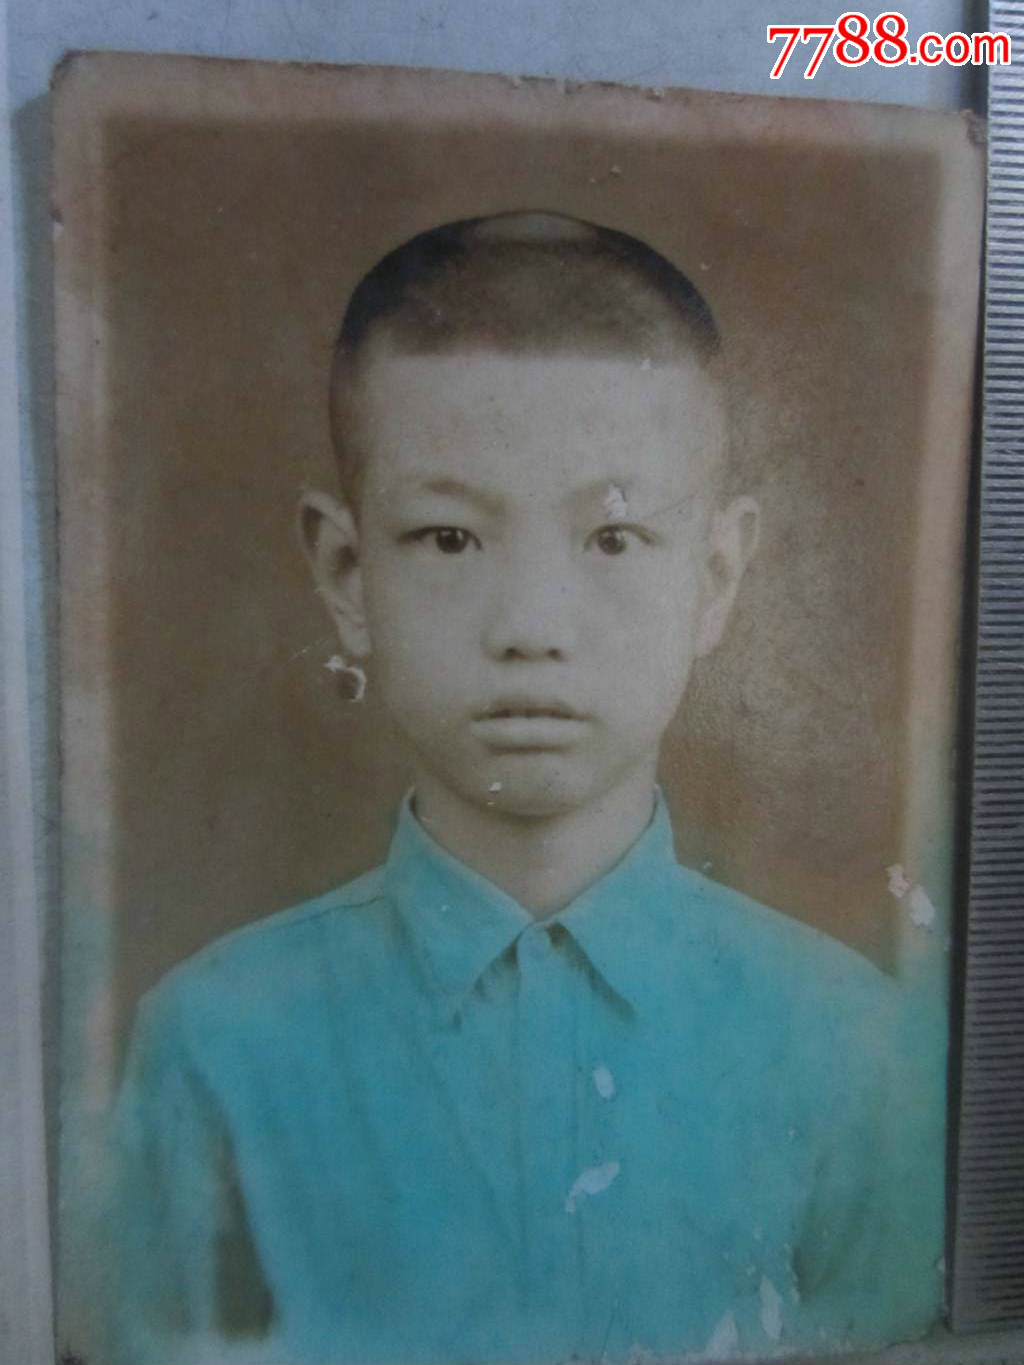 中国boy早期照片图片